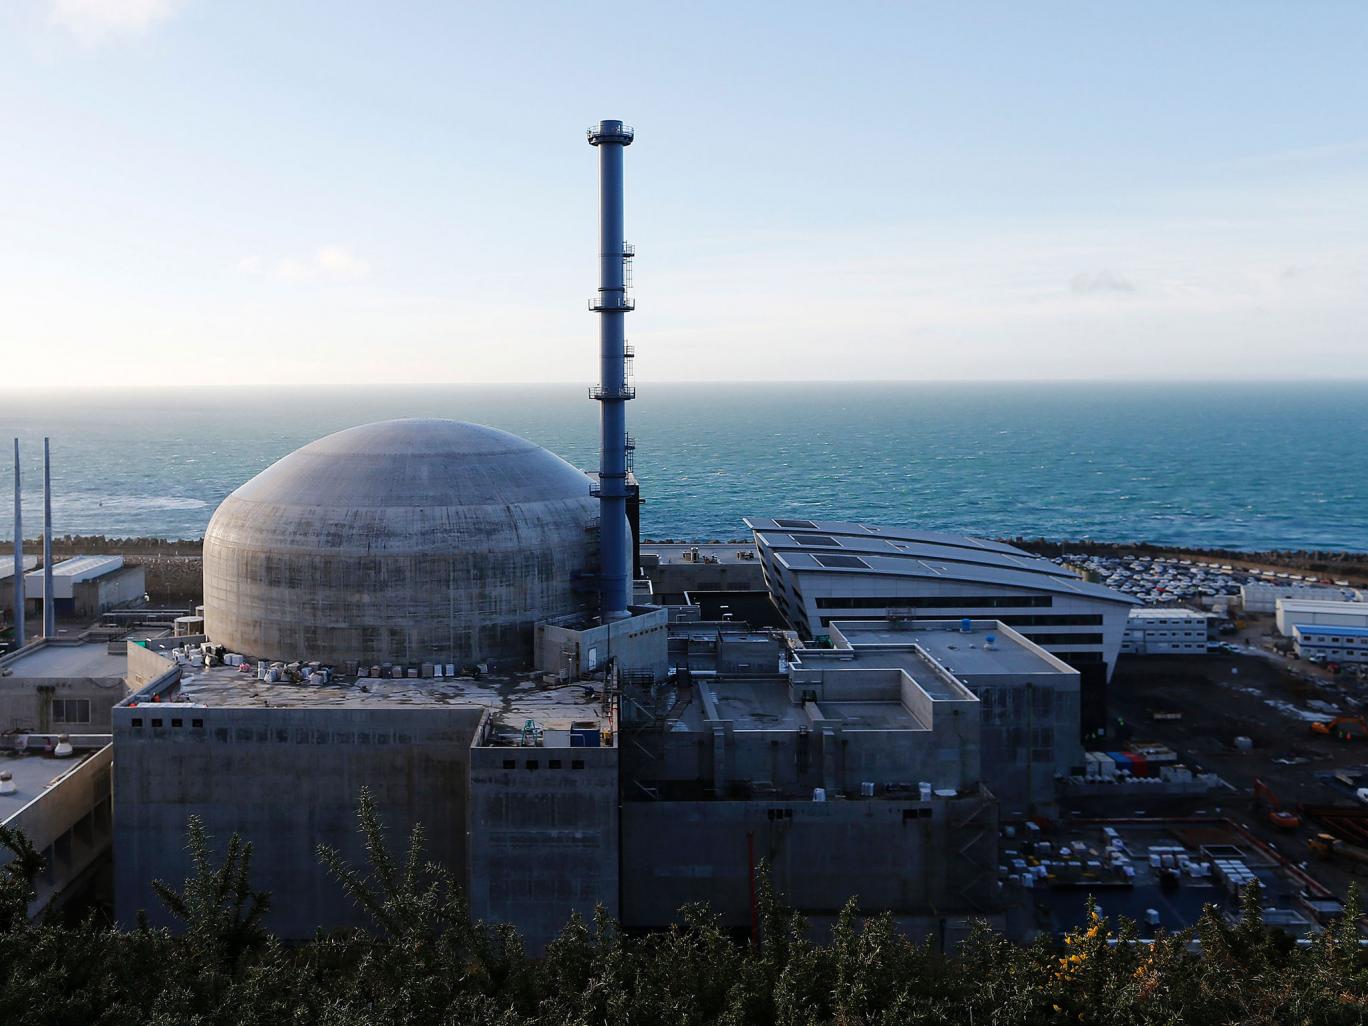 法国核电站爆炸5人受伤现场图曝光 系火灾引起未造成核泄漏